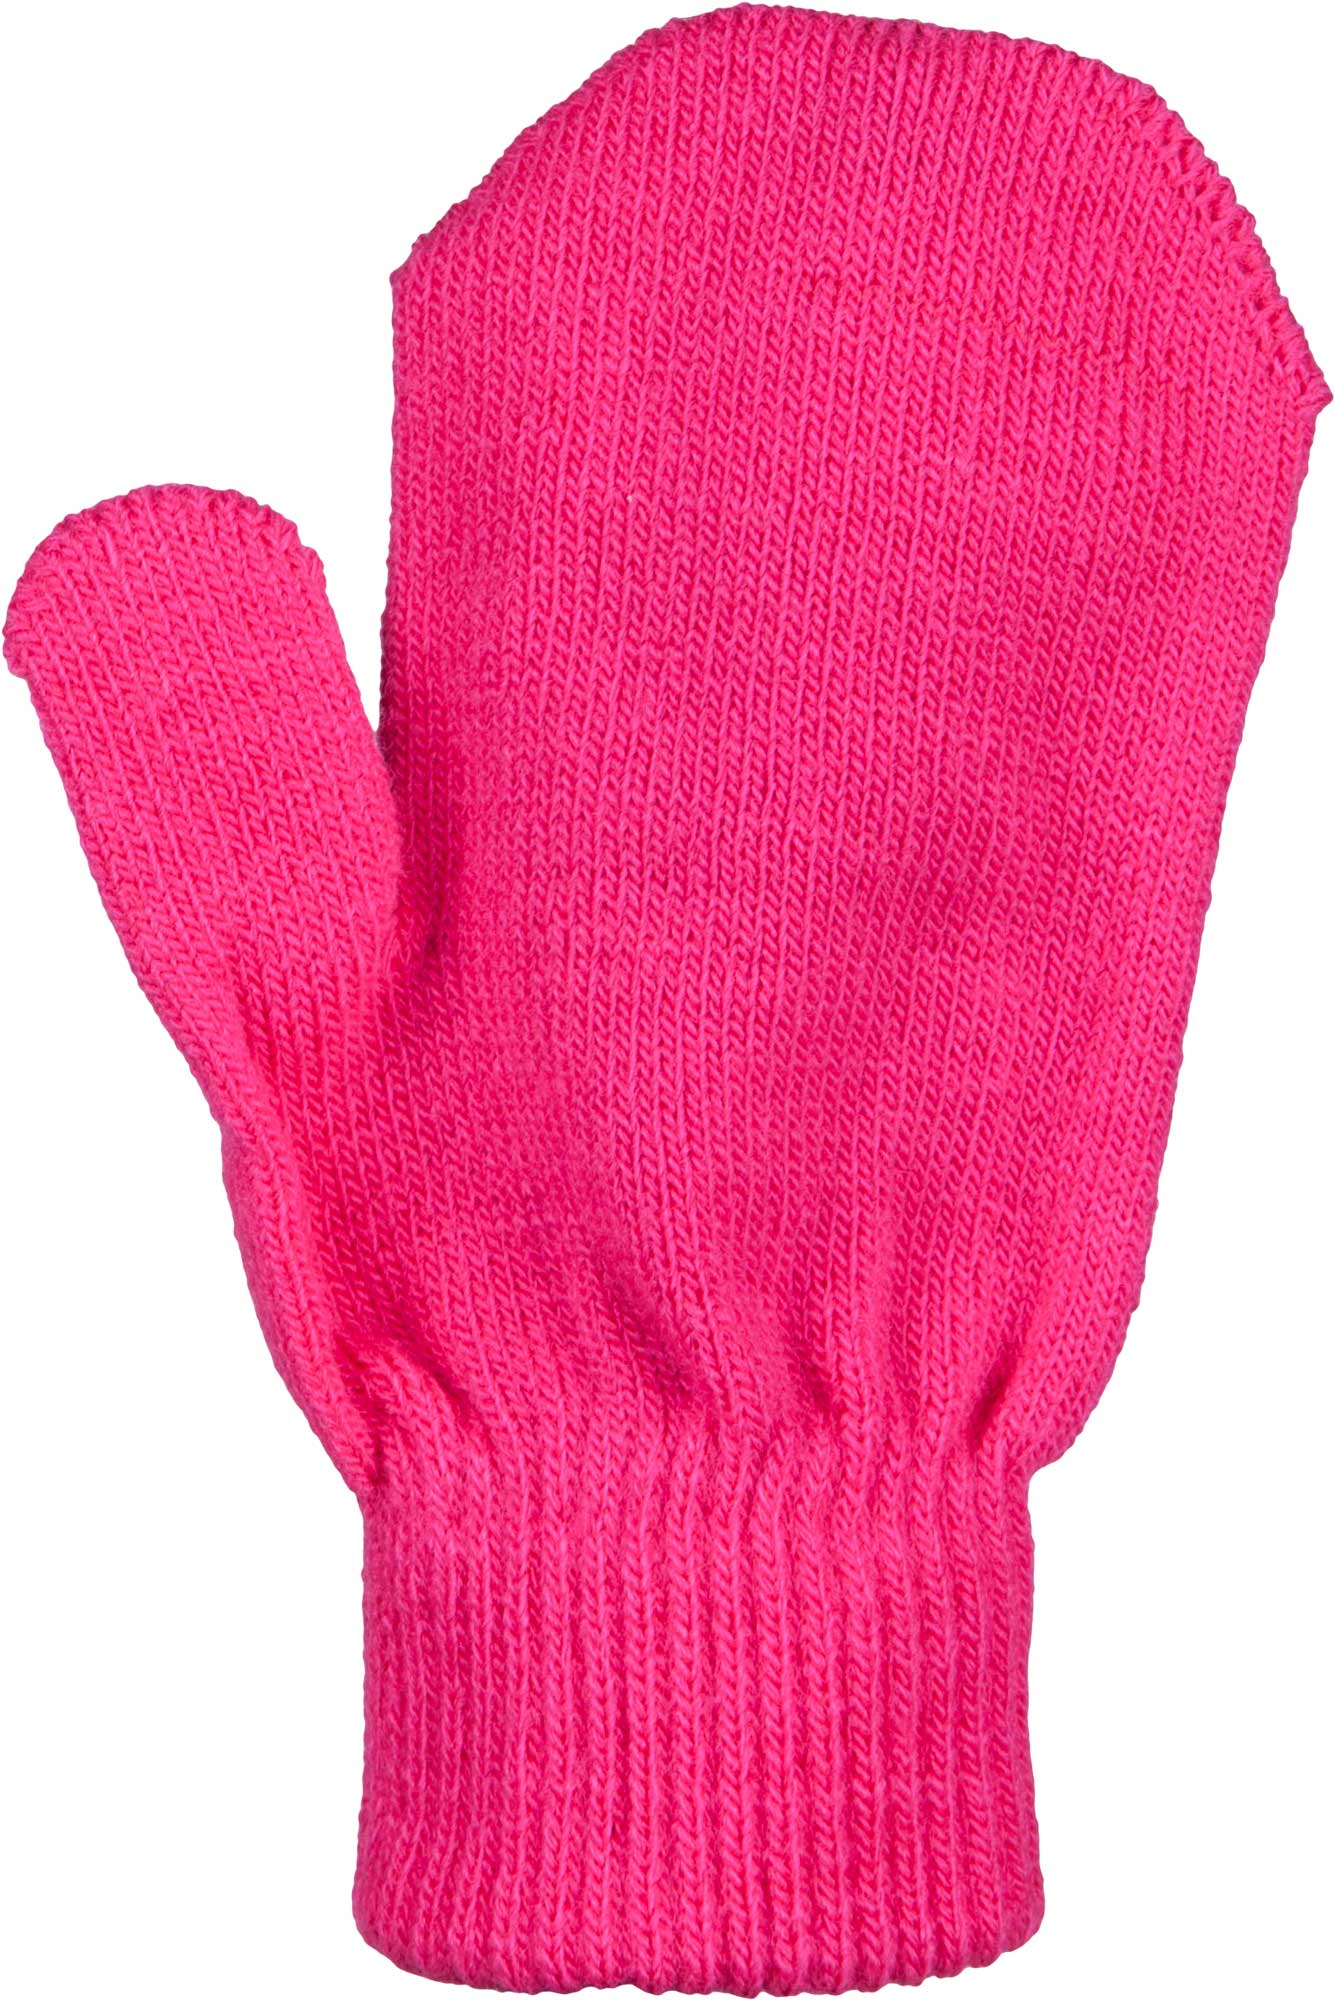 Children’s knitted mittens